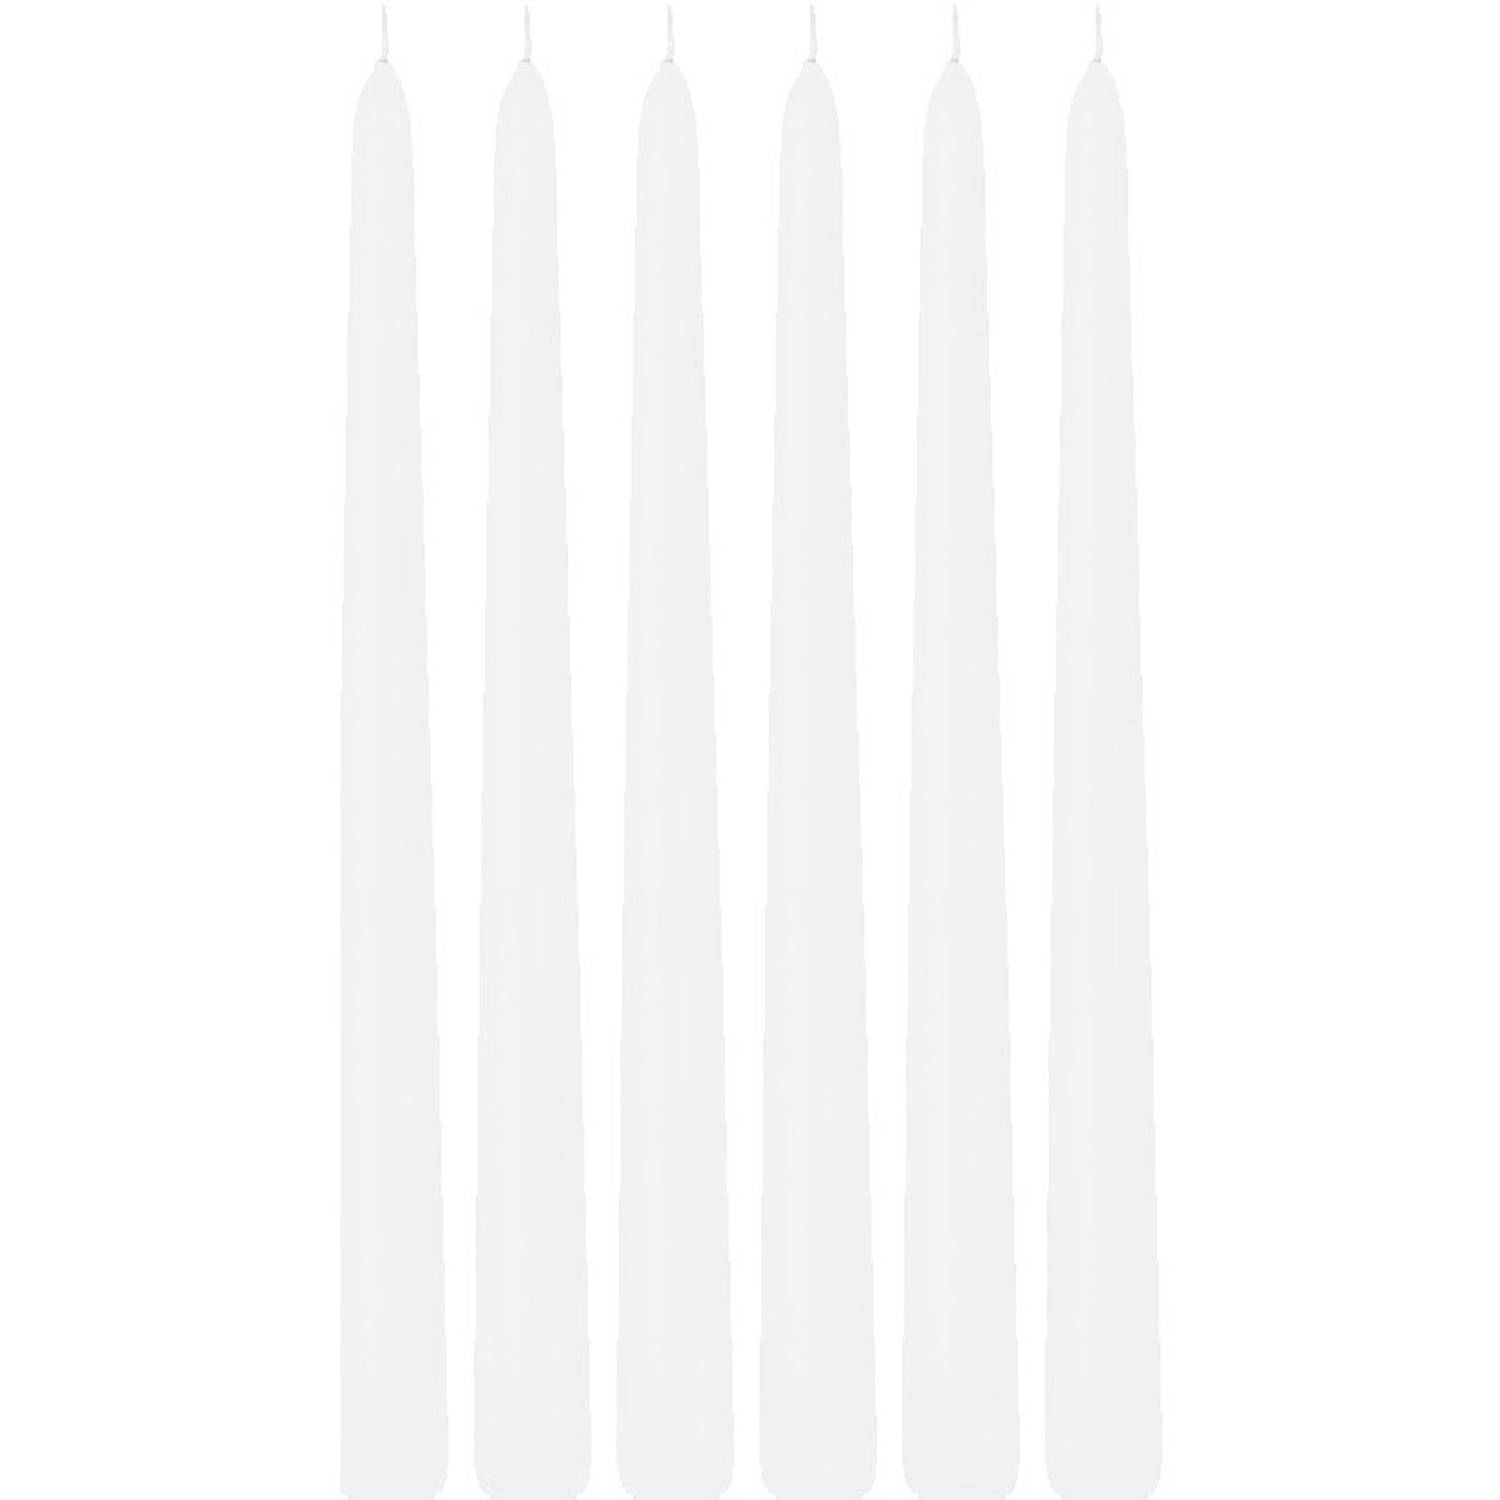 6x Lange Kaarsen 30 Cm 13 Branduren Dinerkaarsen/tafelkaarsen - Dinerkaarsen - Wit